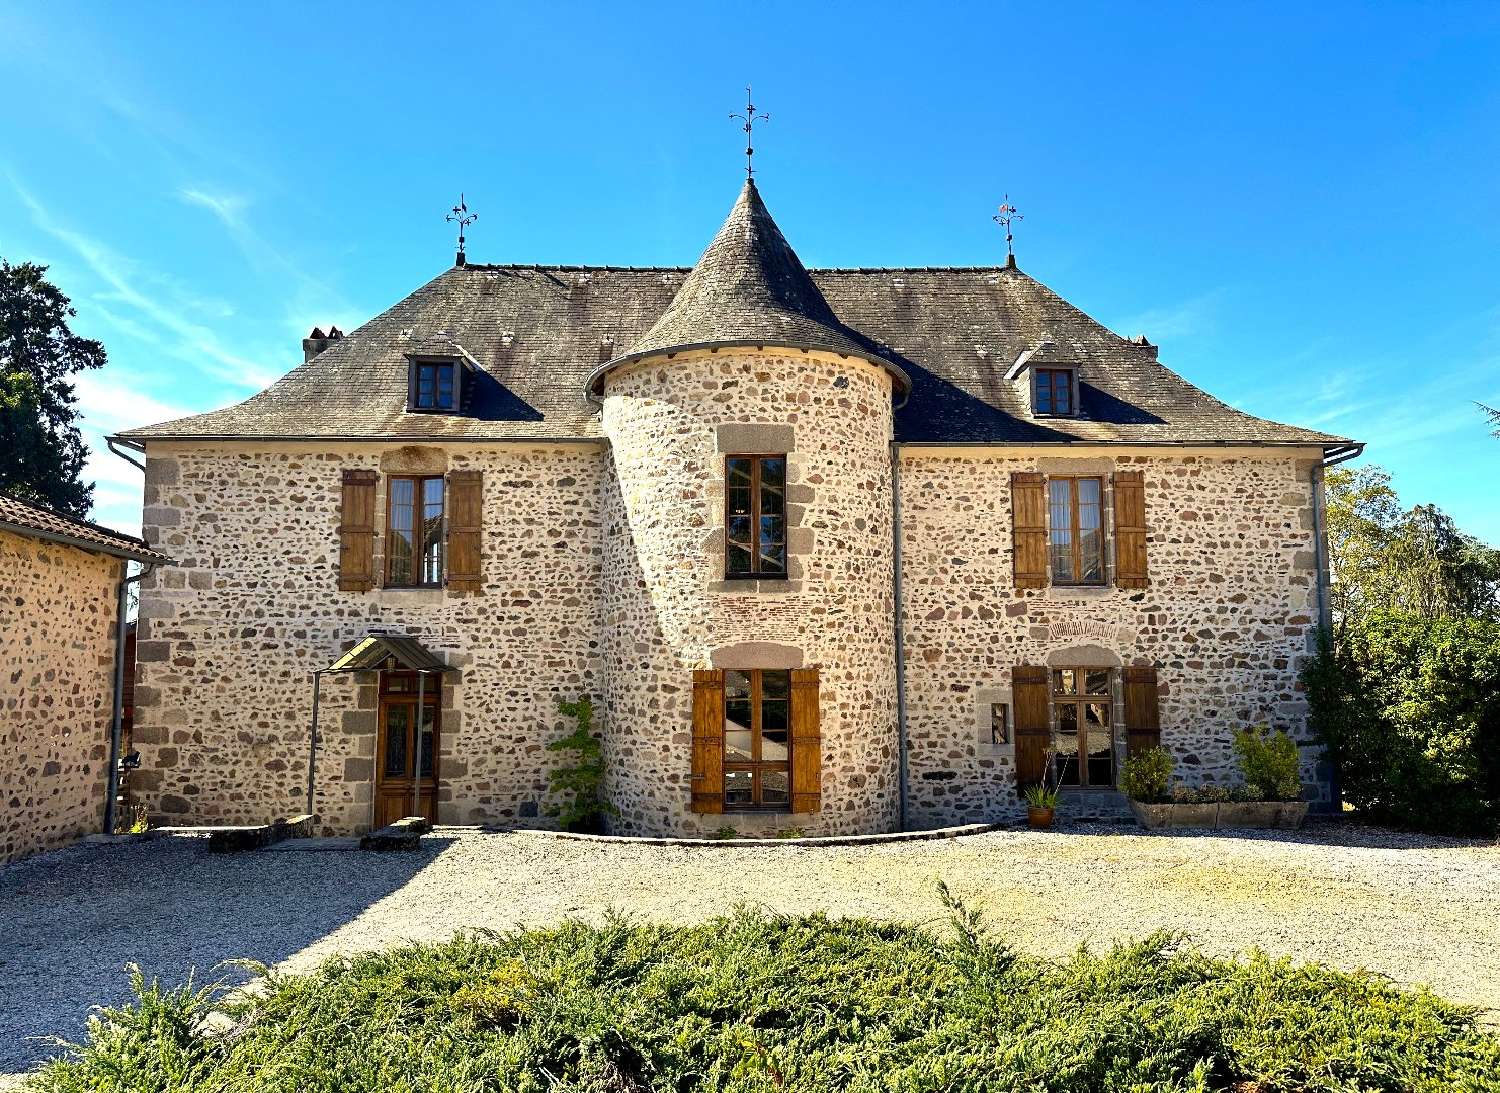  à vendre maison Confolens Charente 2